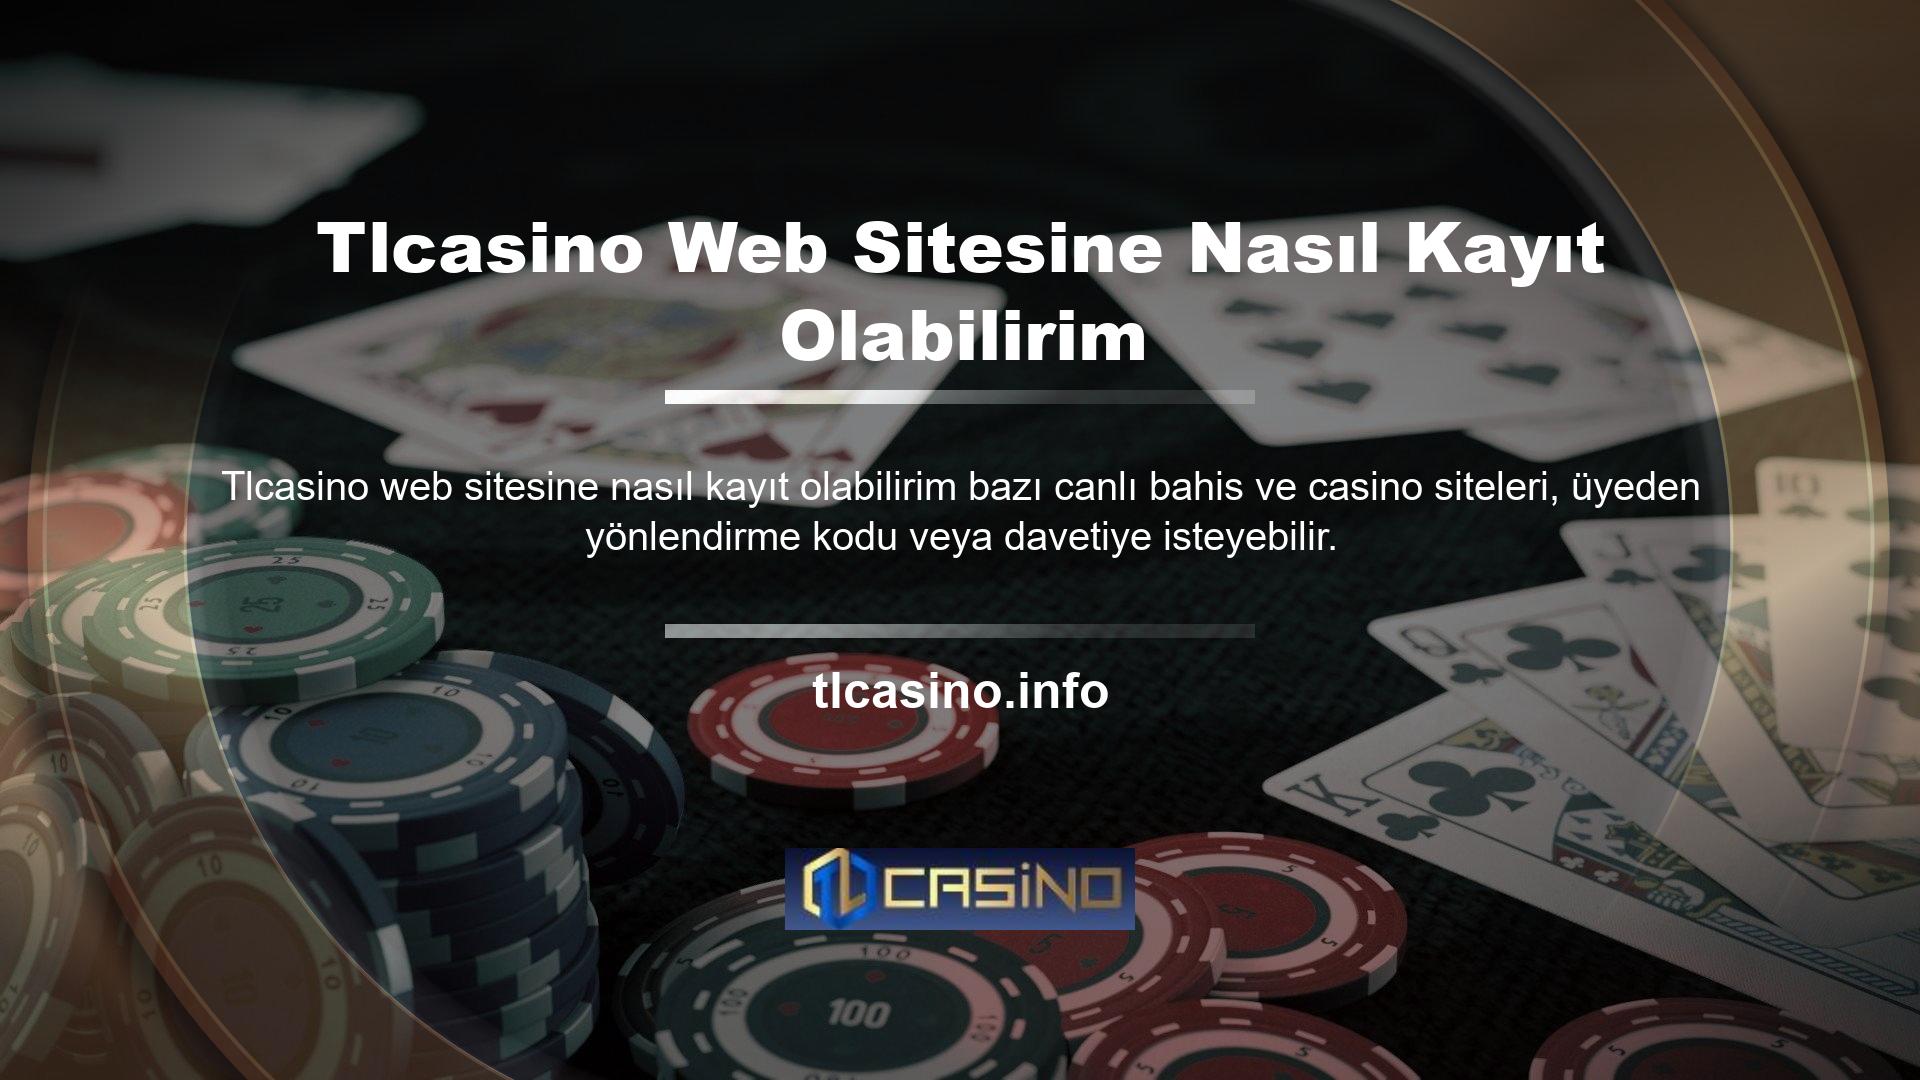 Ancak Tlcasino Canlı Bahis ve Casino web sitesine kayıt olduğunuzda bu durum geçerli değildir